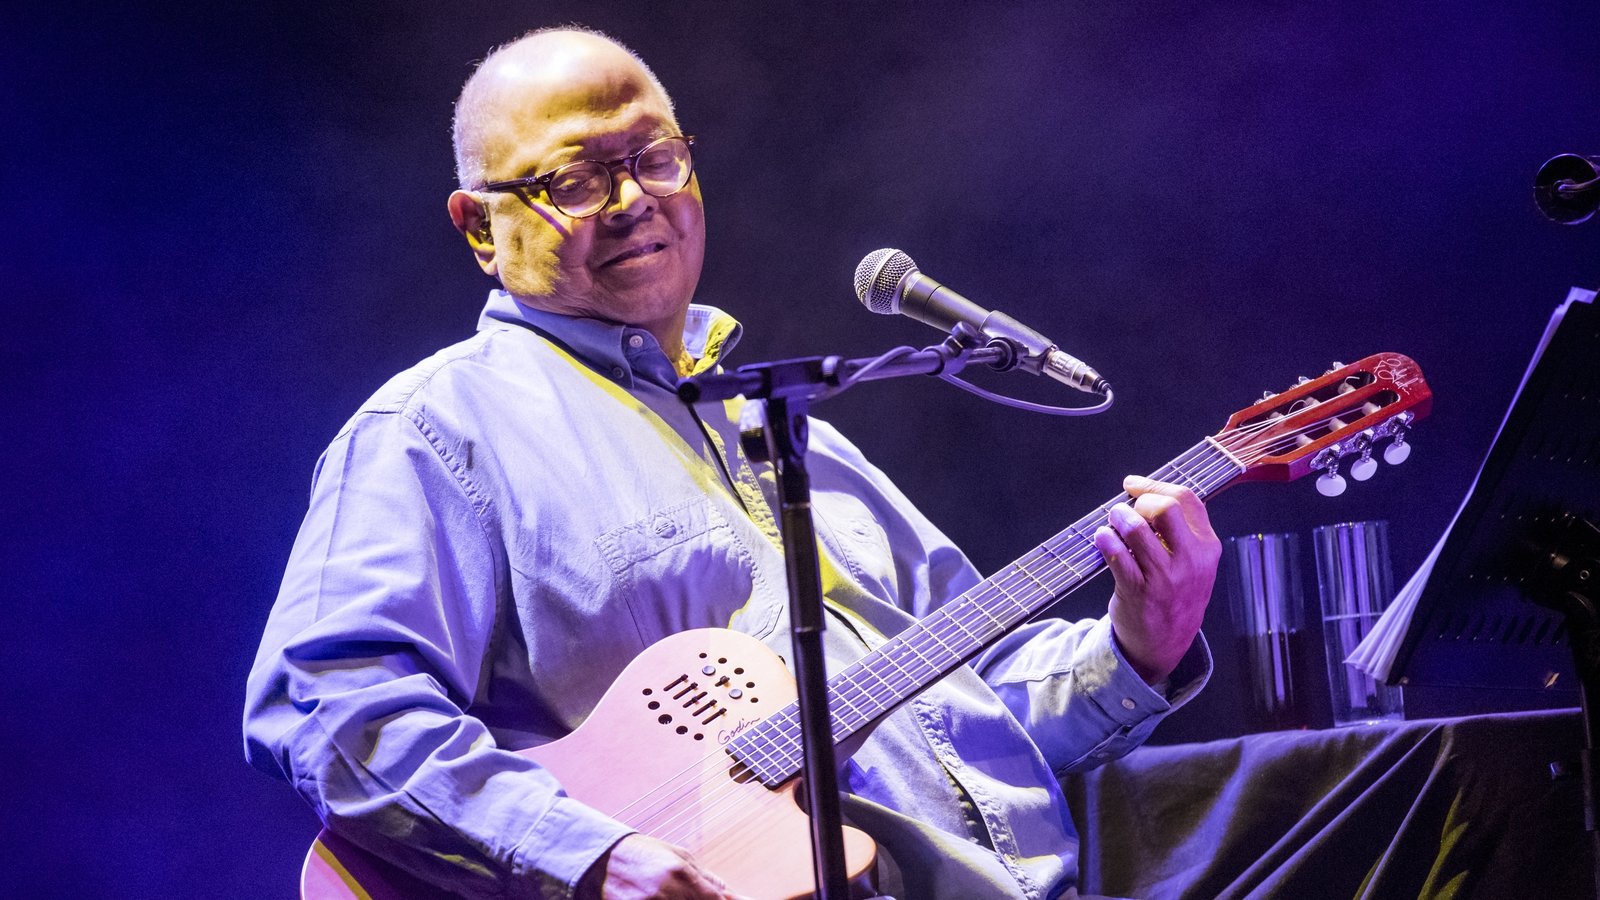 Cuban music legend Pablo Milanés dies aged 79